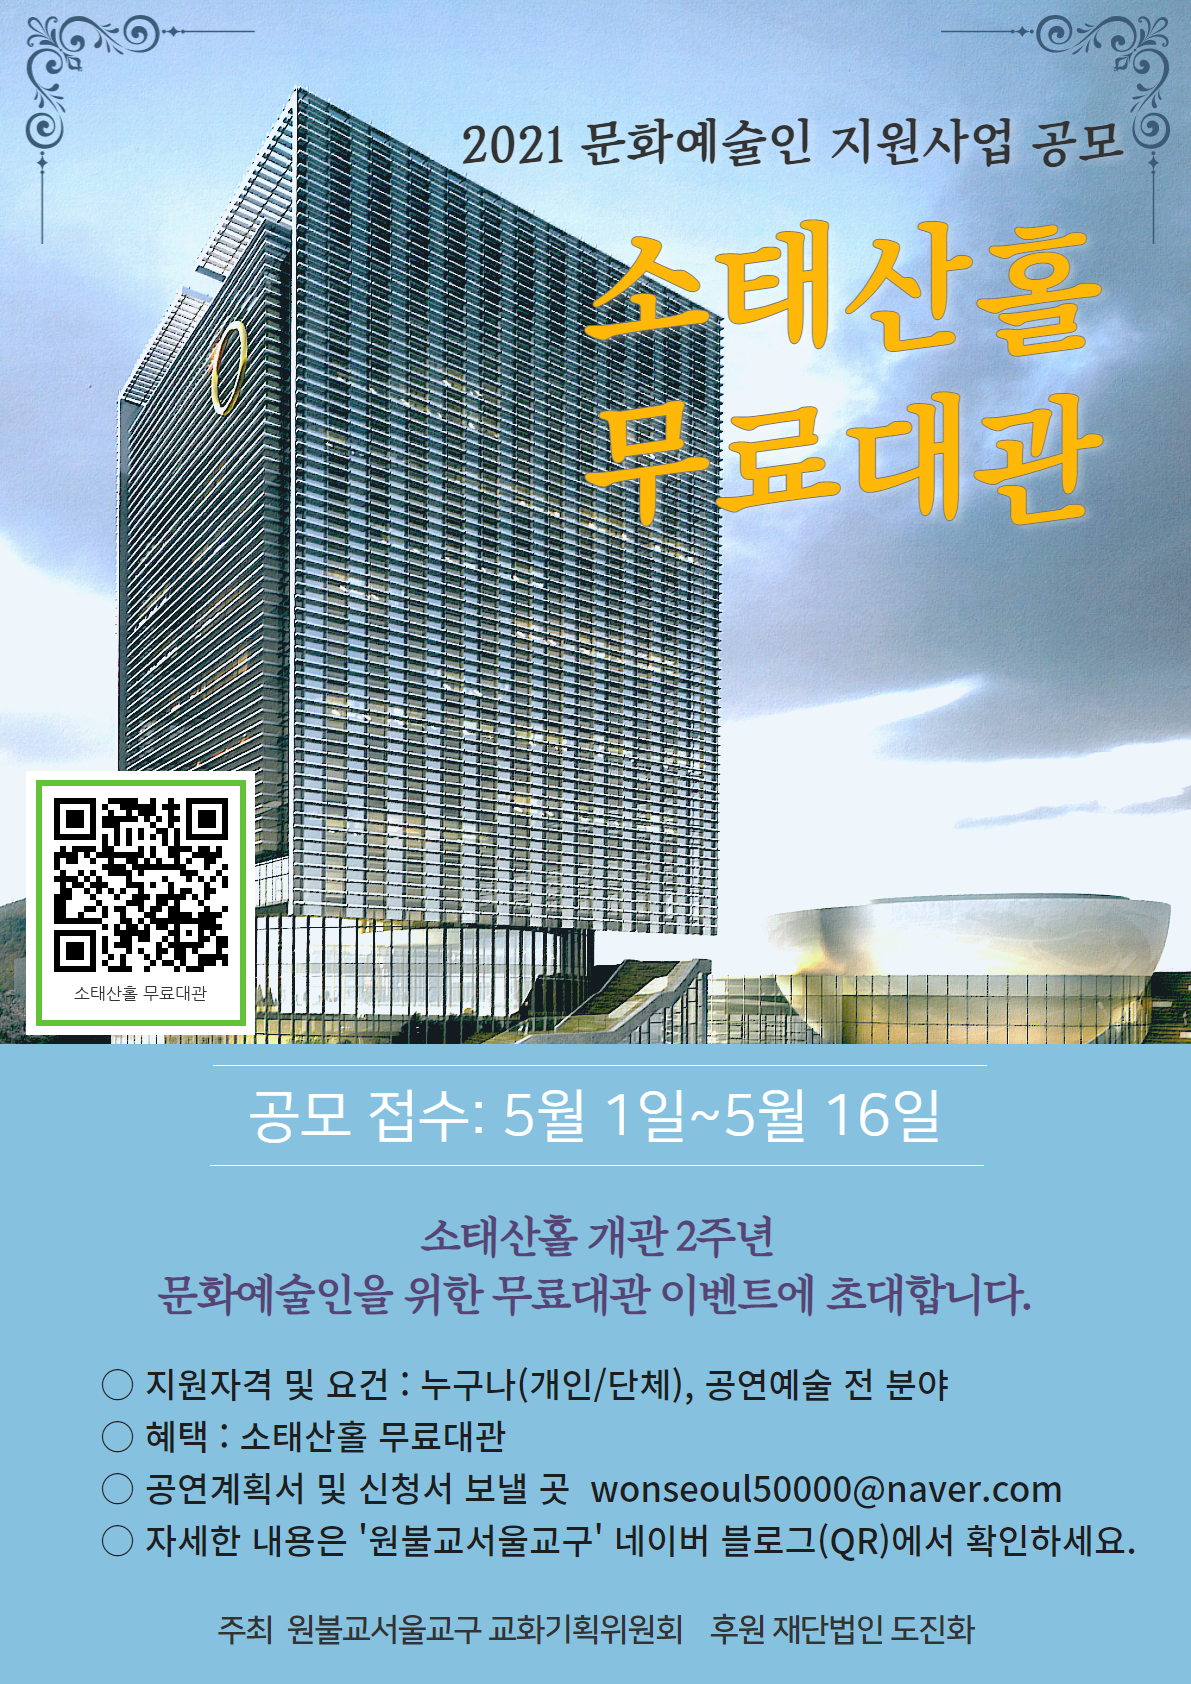 소태산 홀 공연 공모사업 포스터(수정).png